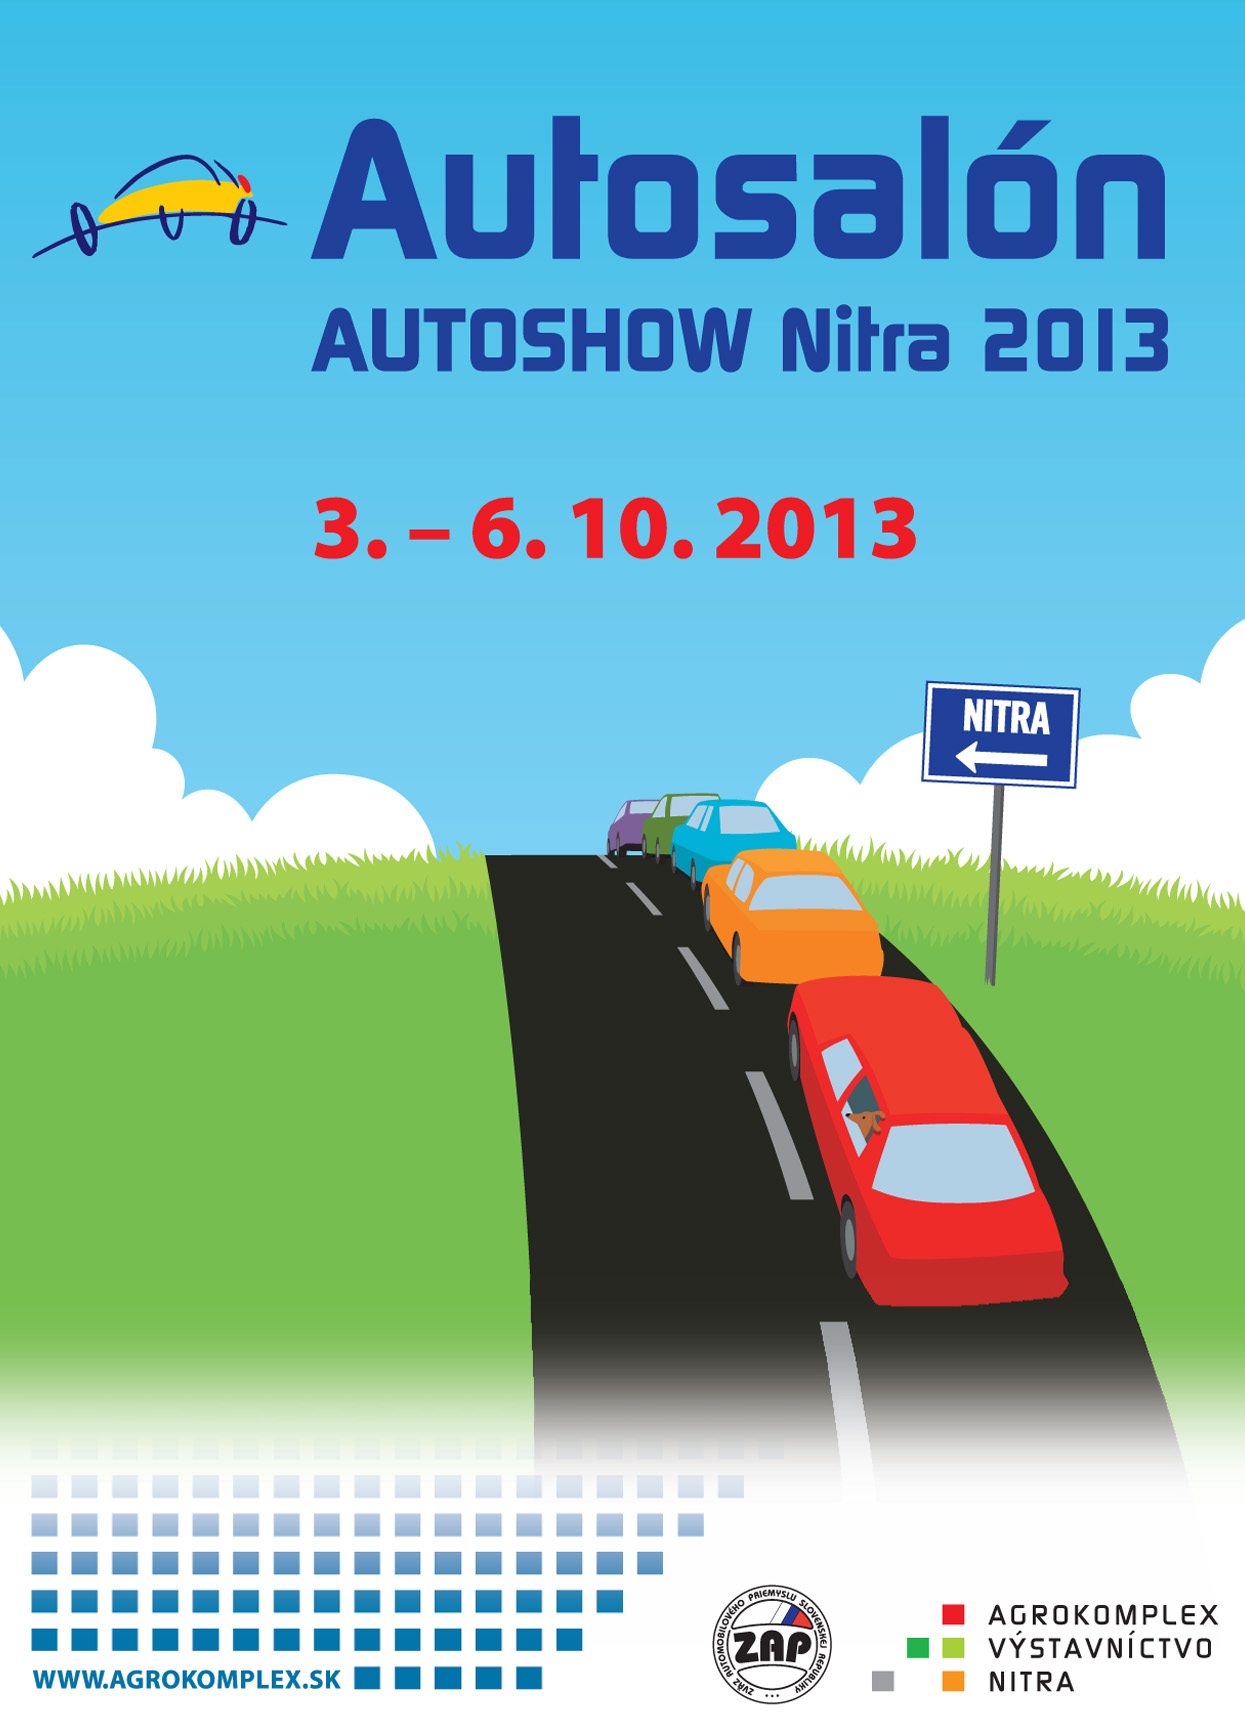 Autosalon Nitra 2013